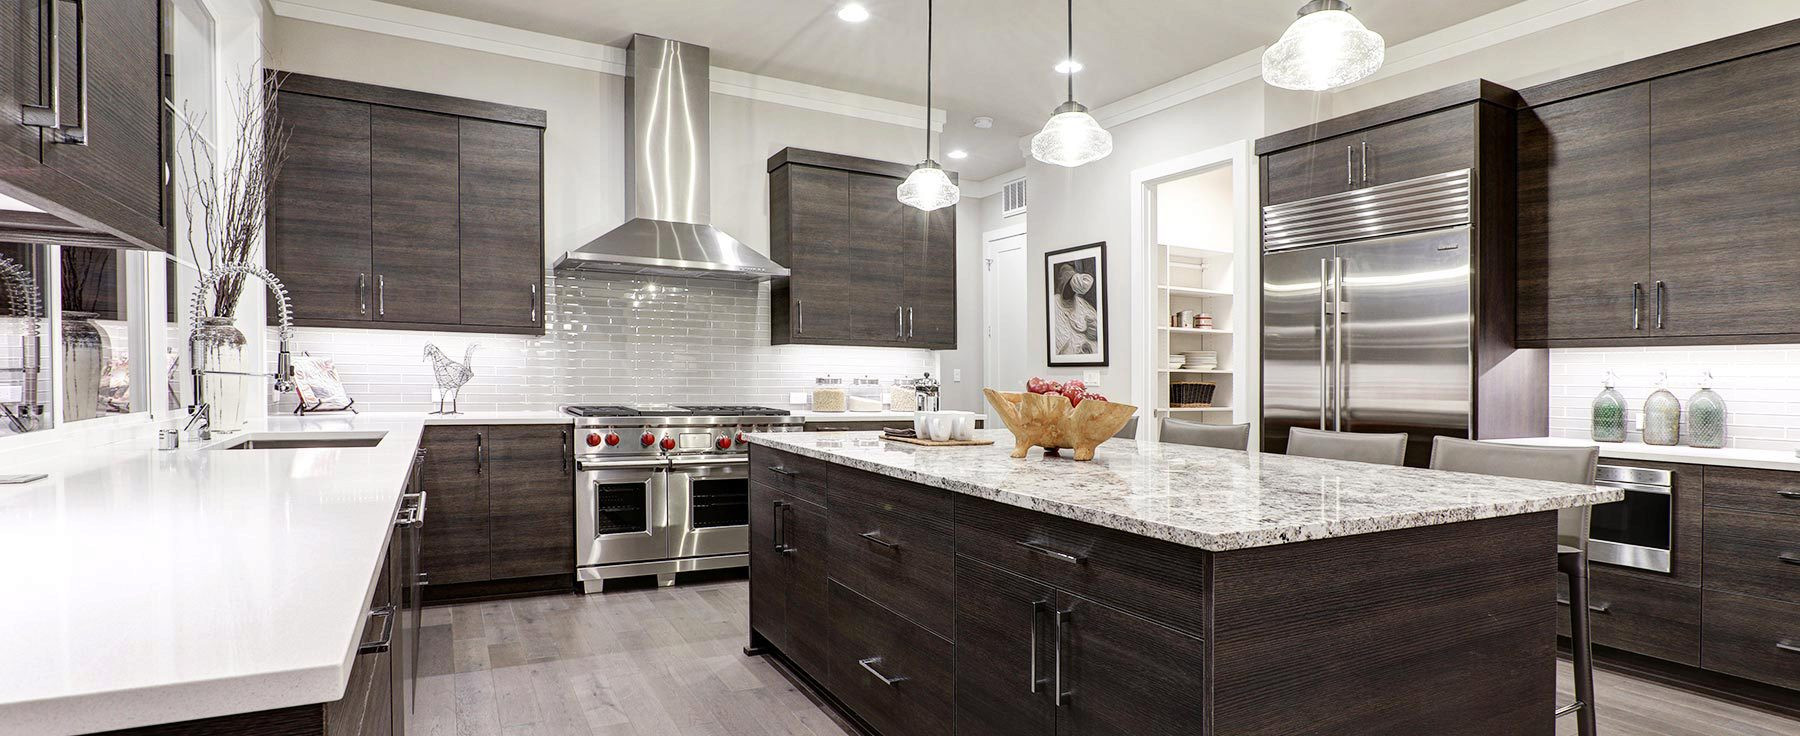 Kitchen Remodel Costs Estimator
 Kitchen Remodels Under 5000 – Wow Blog